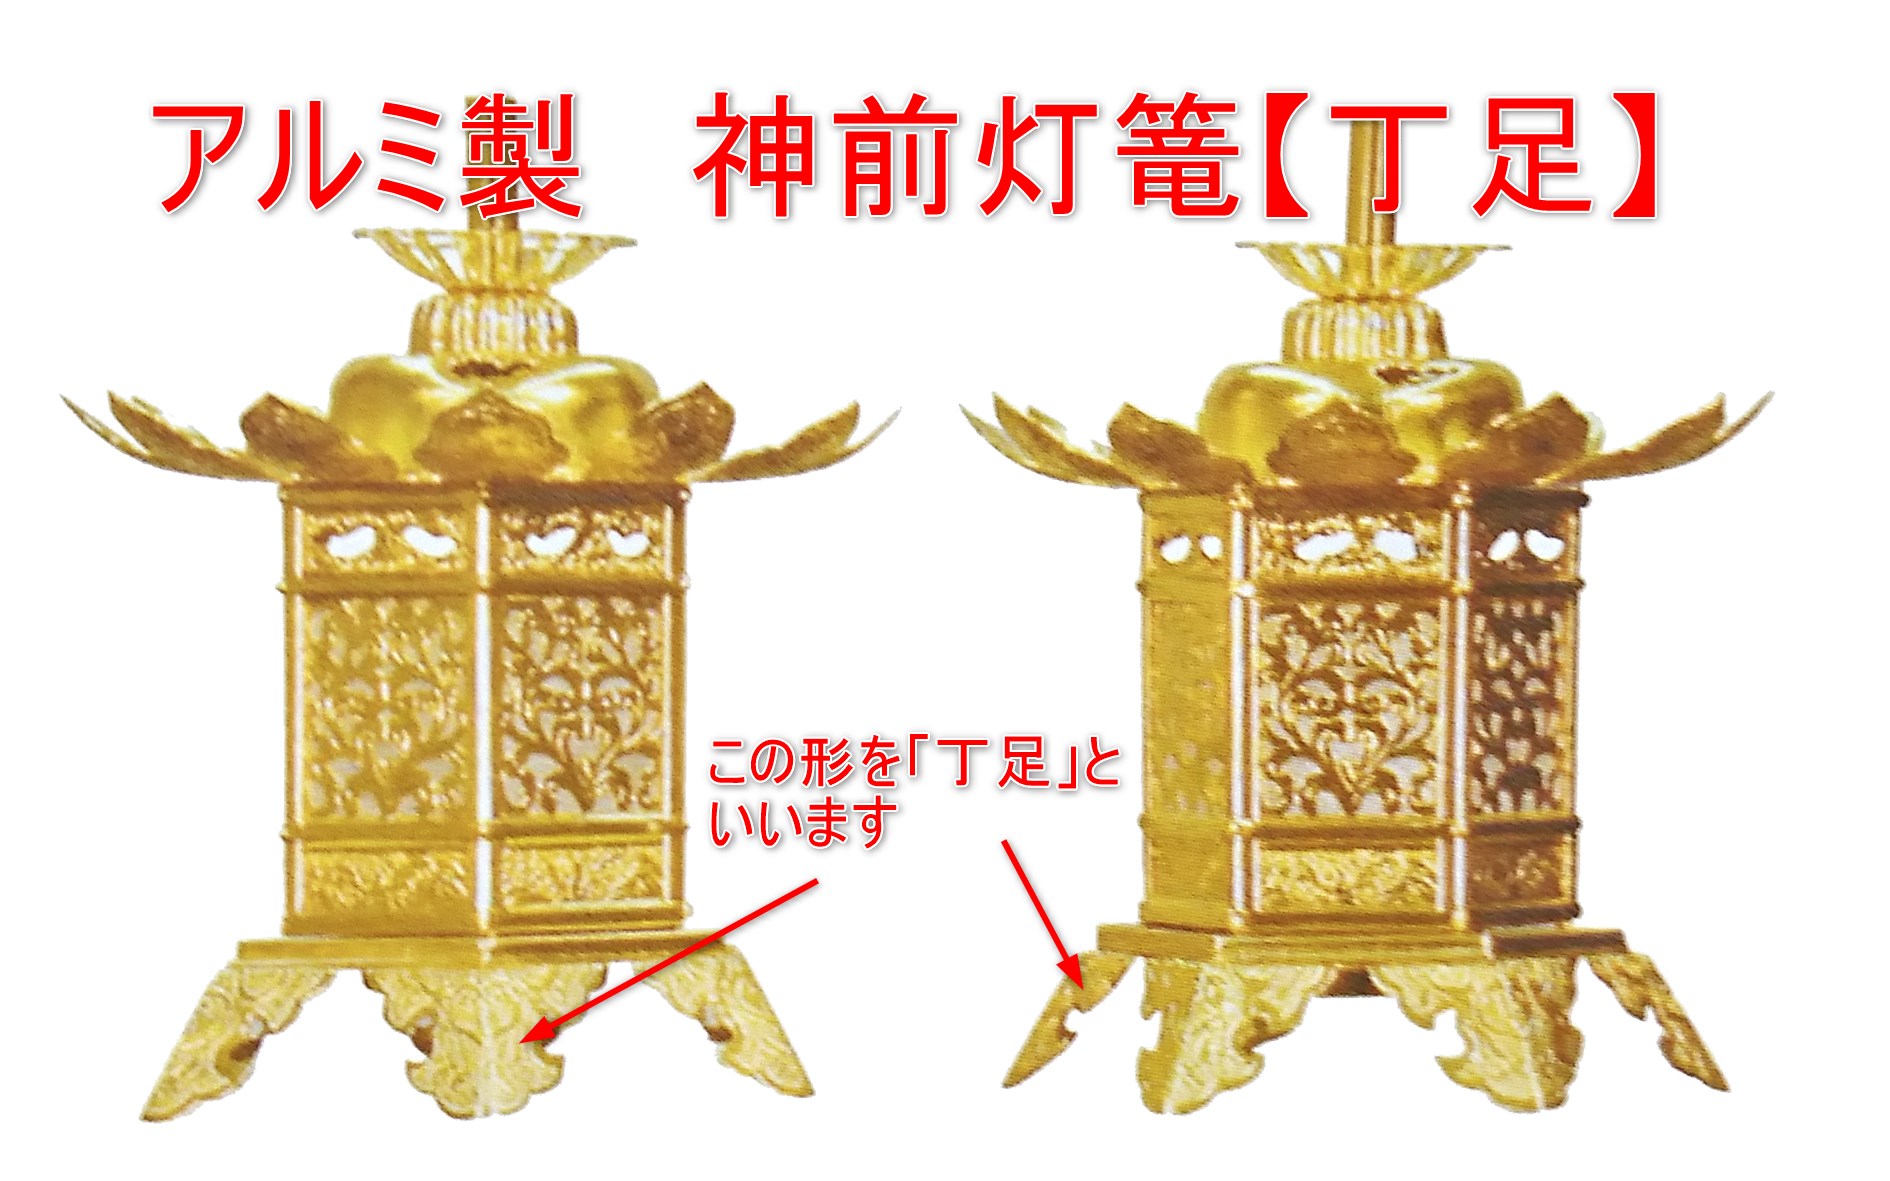 超特価国産アルミ神前灯籠(金色)2寸とLED電気配線コード一式 その他